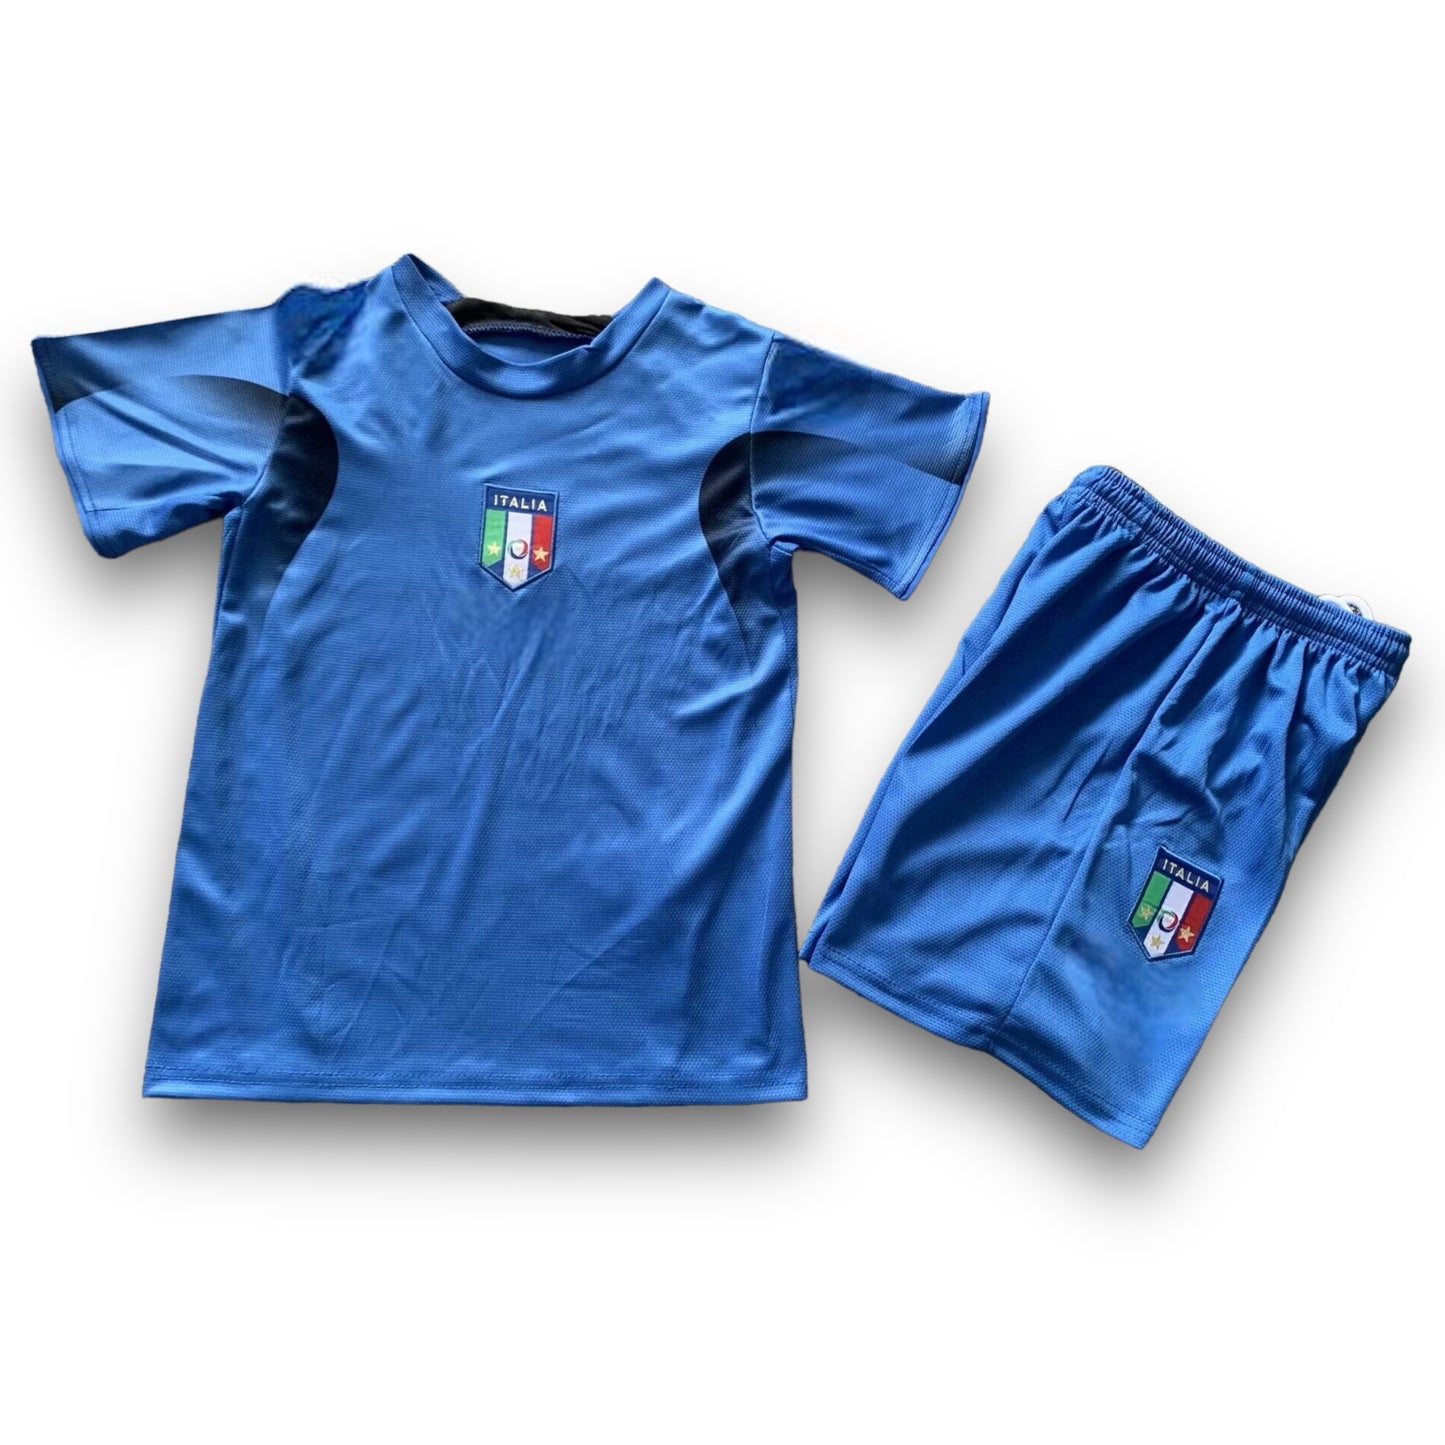 Camiseta Italia 2006 Local